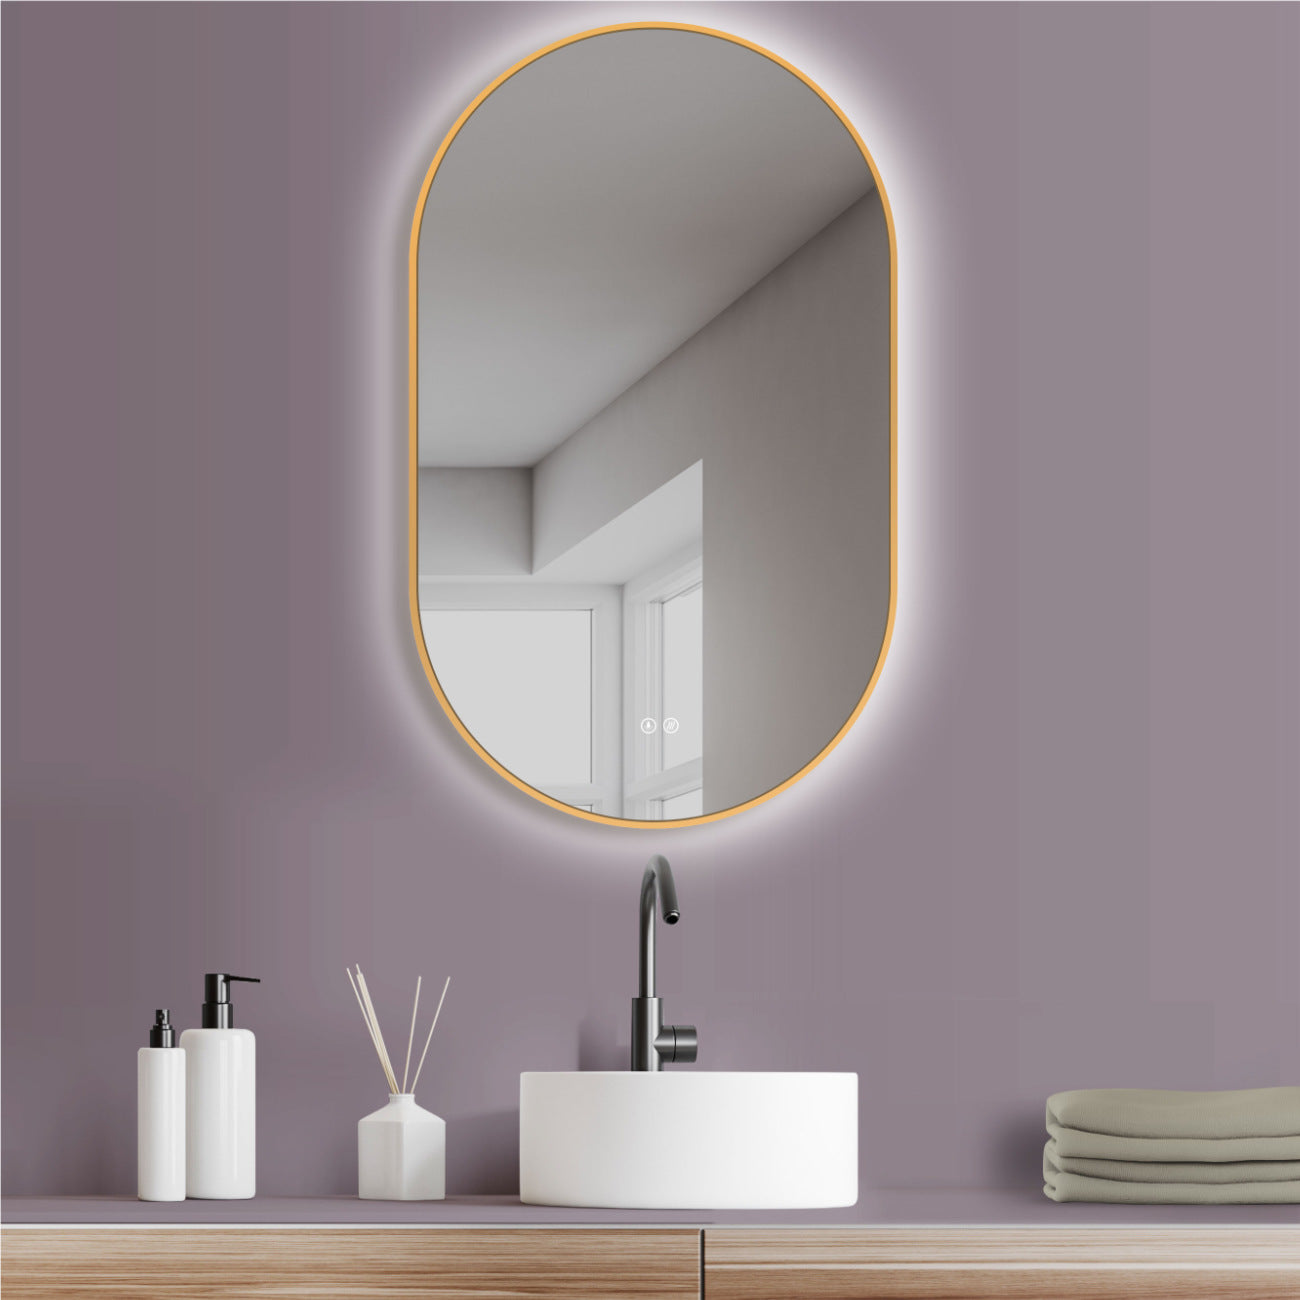 ANTIBESCHLAG LED Badspiegel oval mit Gold Rahmen, Lichtwechsel